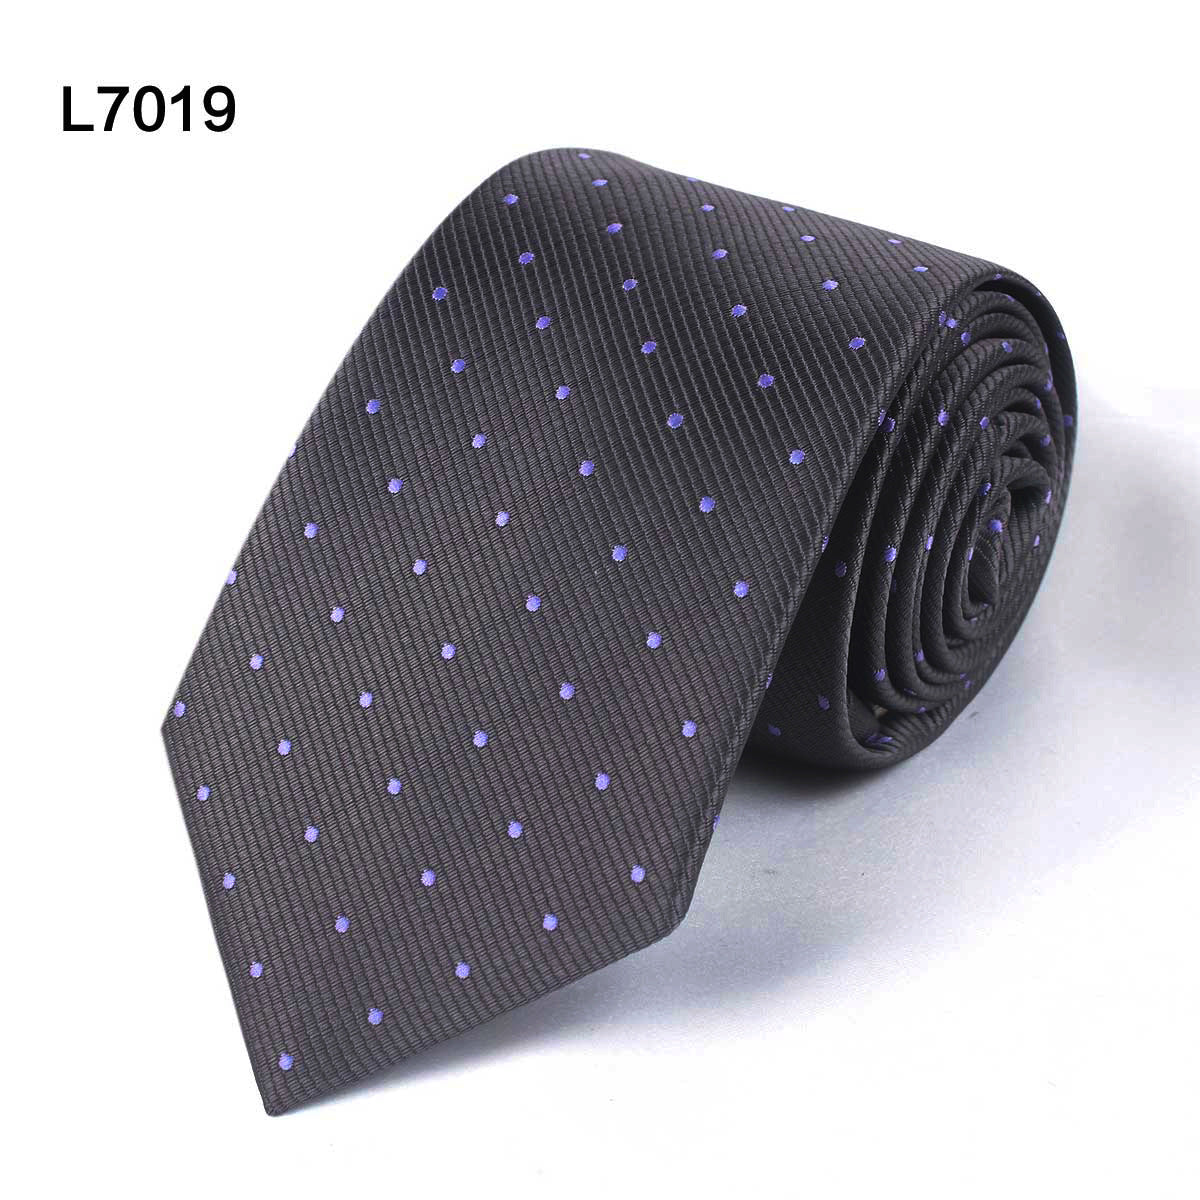 Dotted Necktie - Black, Grey, Dark Blue